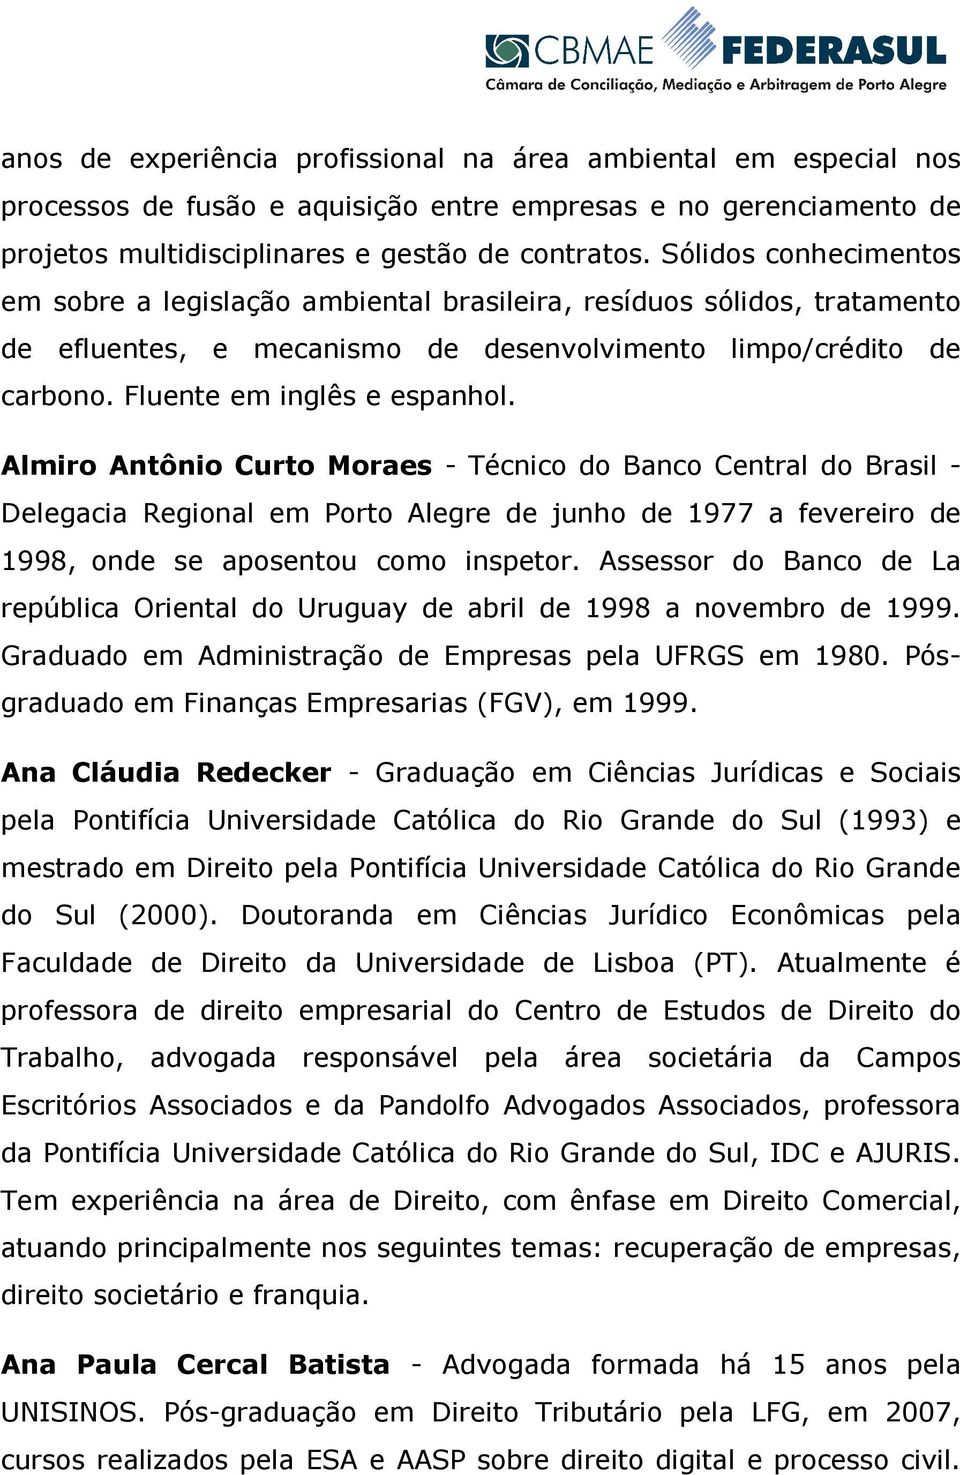 Almiro Antônio Curto Moraes - Técnico do Banco Central do Brasil - Delegacia Regional em Porto Alegre de junho de 1977 a fevereiro de 1998, onde se aposentou como inspetor.